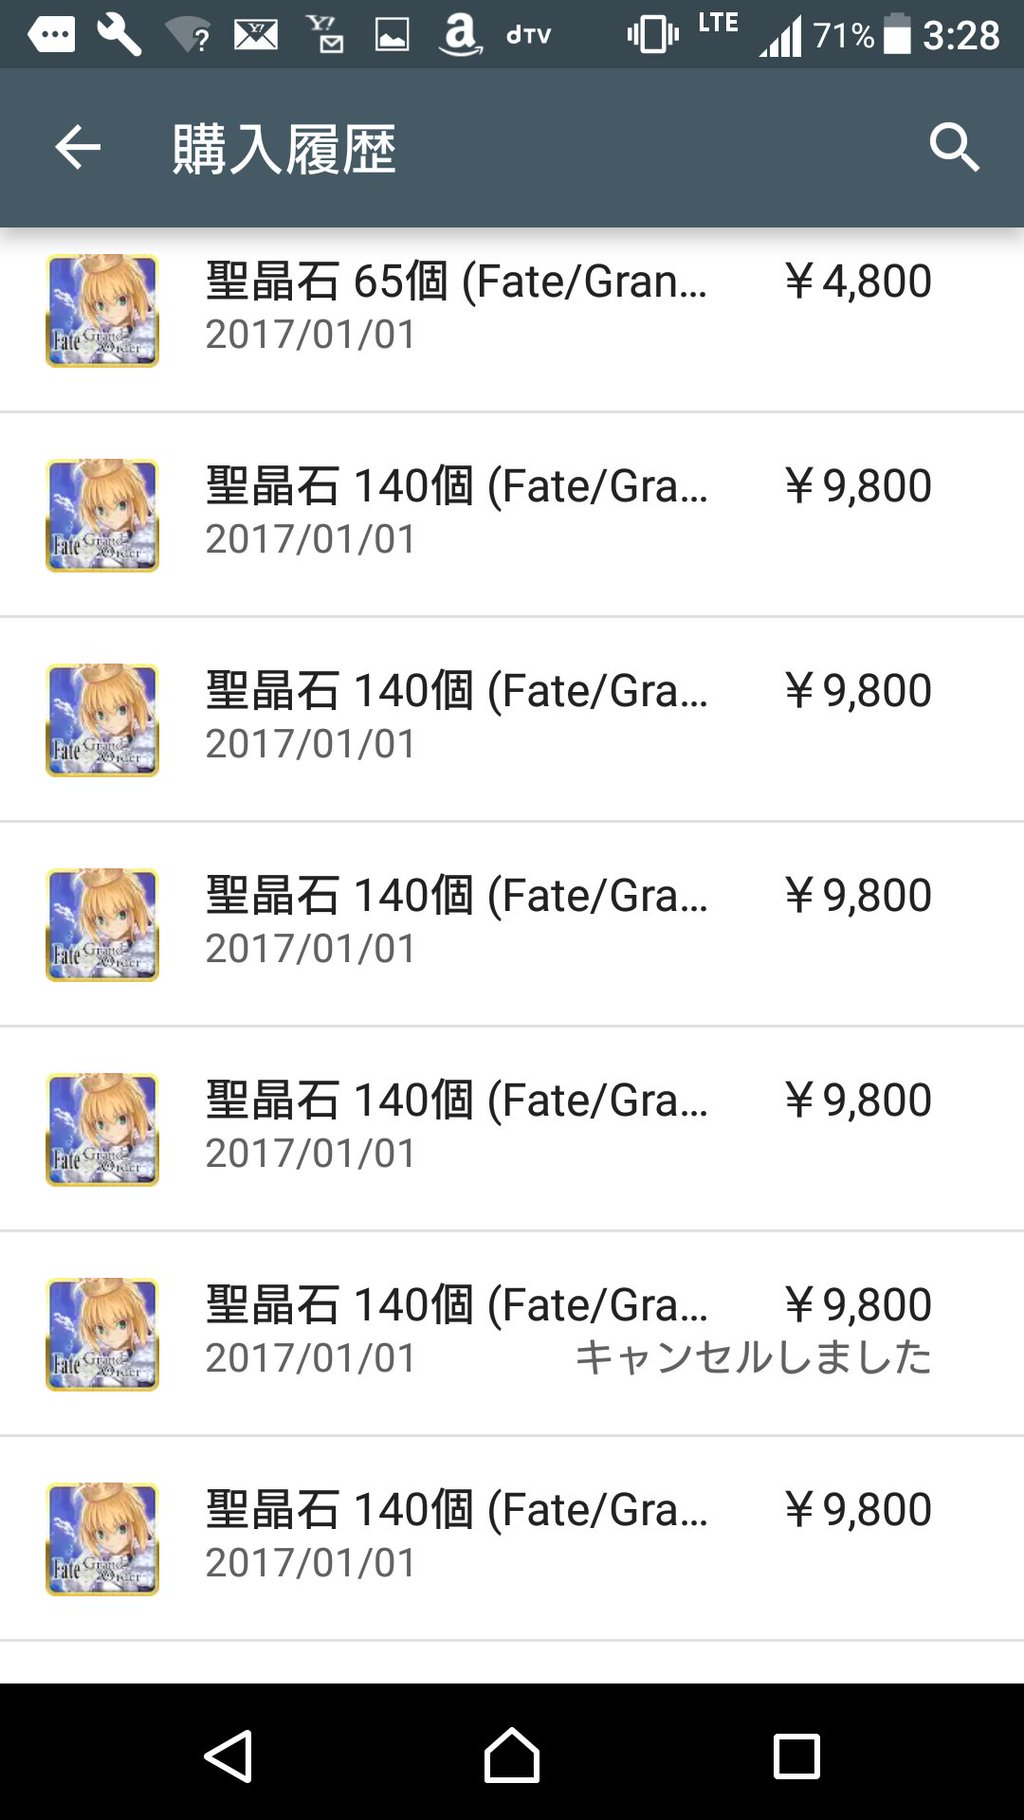 新情報追記あり Fate Grand Order 正月課金トラブル 一部プレイヤーには返金の対応するも公式告知はナシ